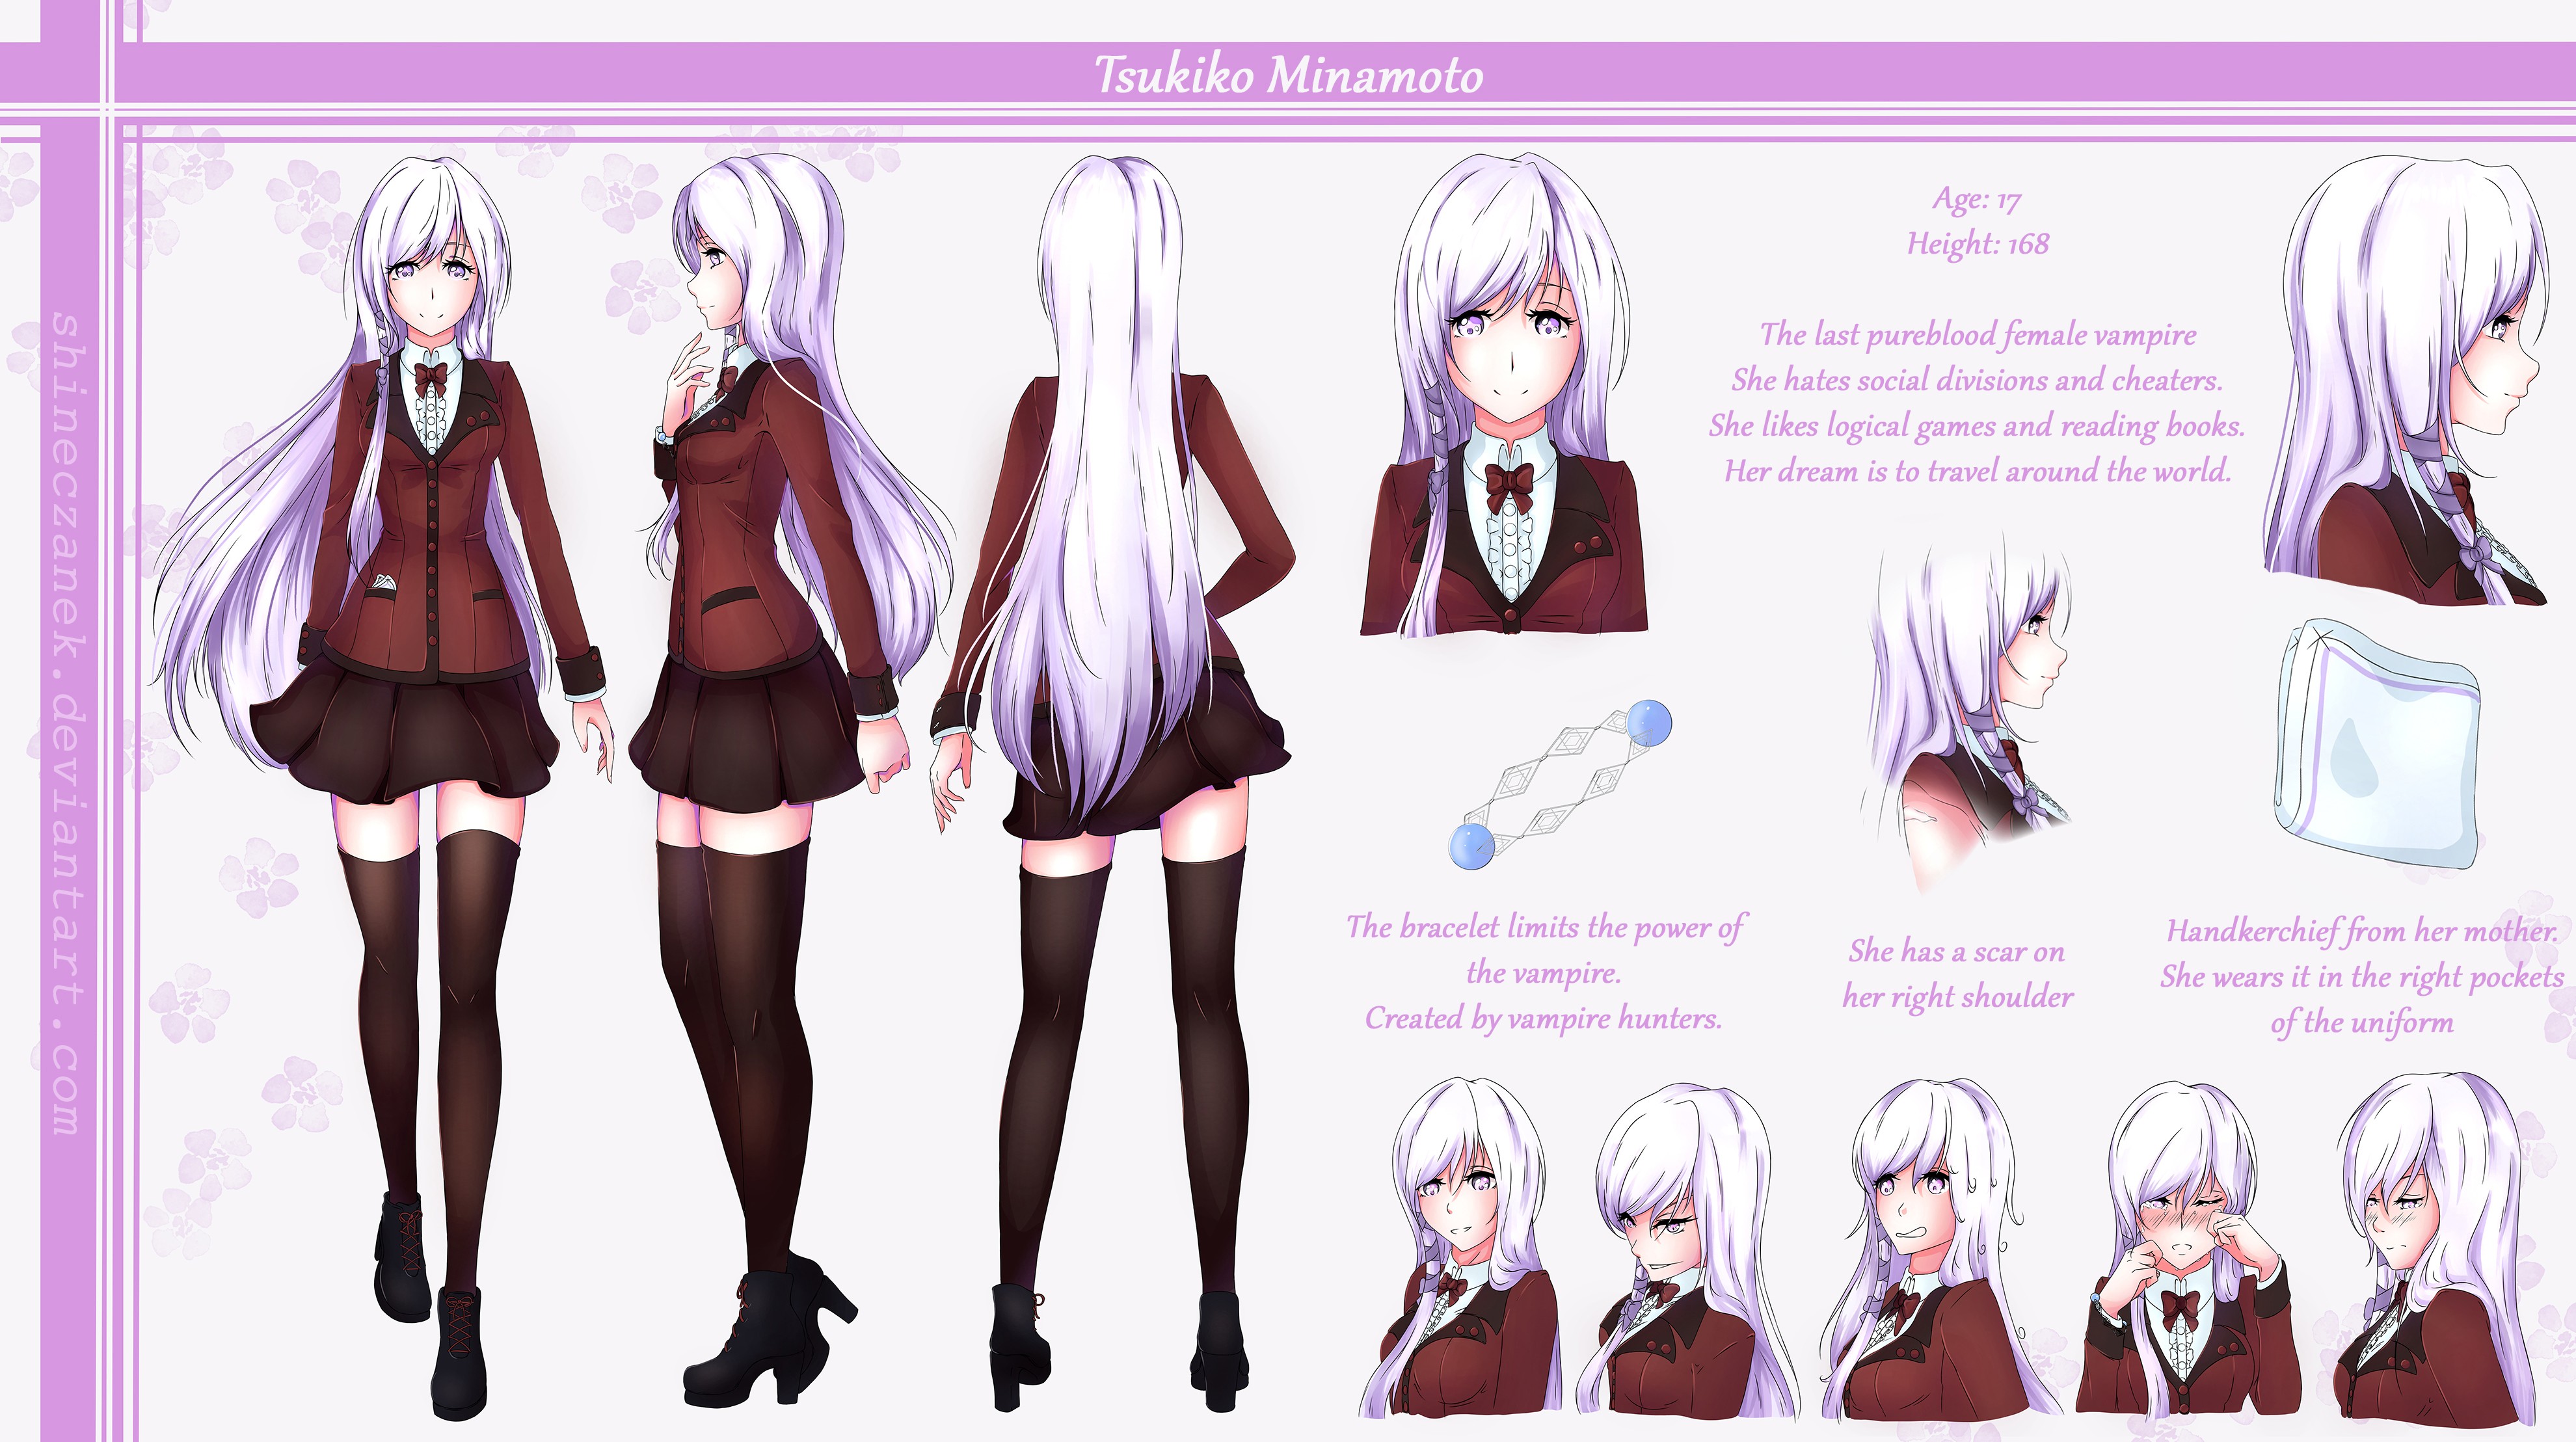 Tsukiko Minamoto - character design